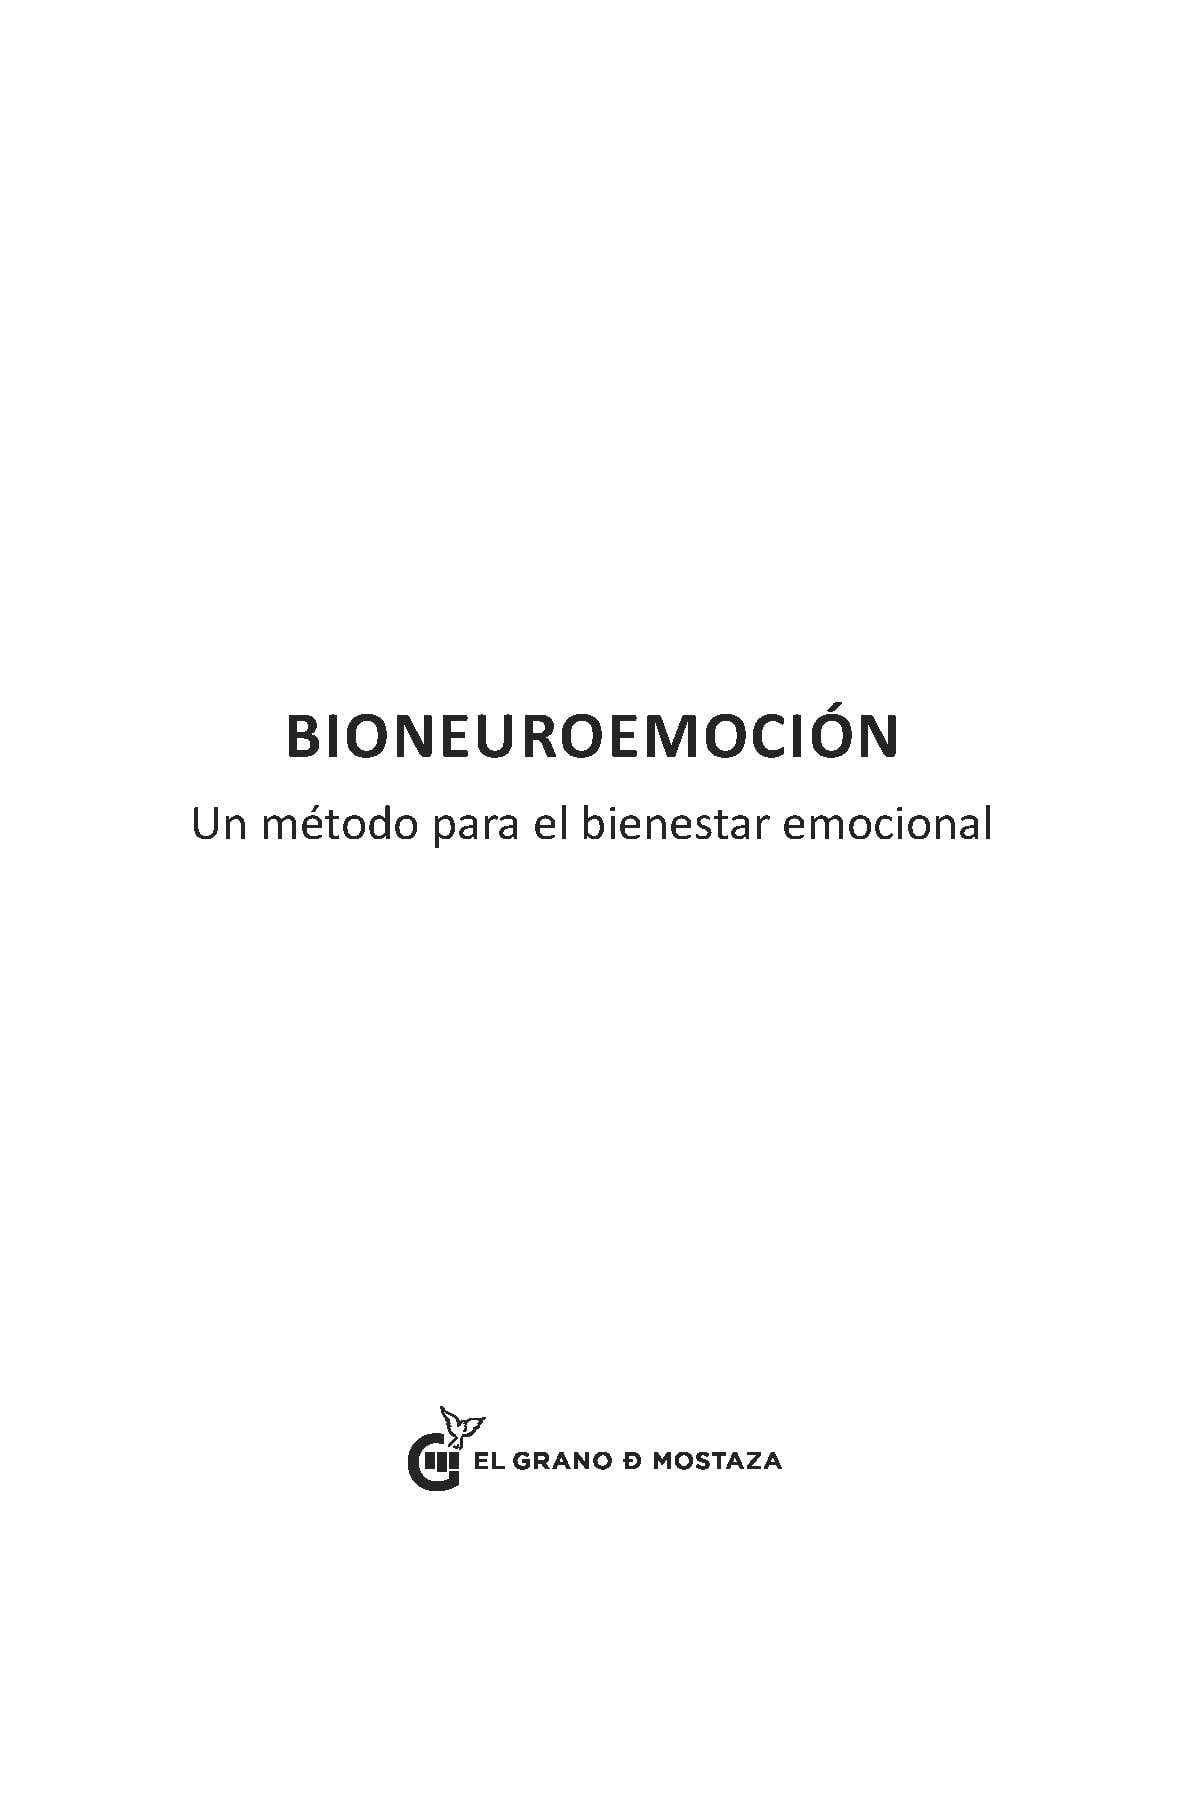 Bioneuroemoción: un método para el bienestar emocional - Libros La parábola